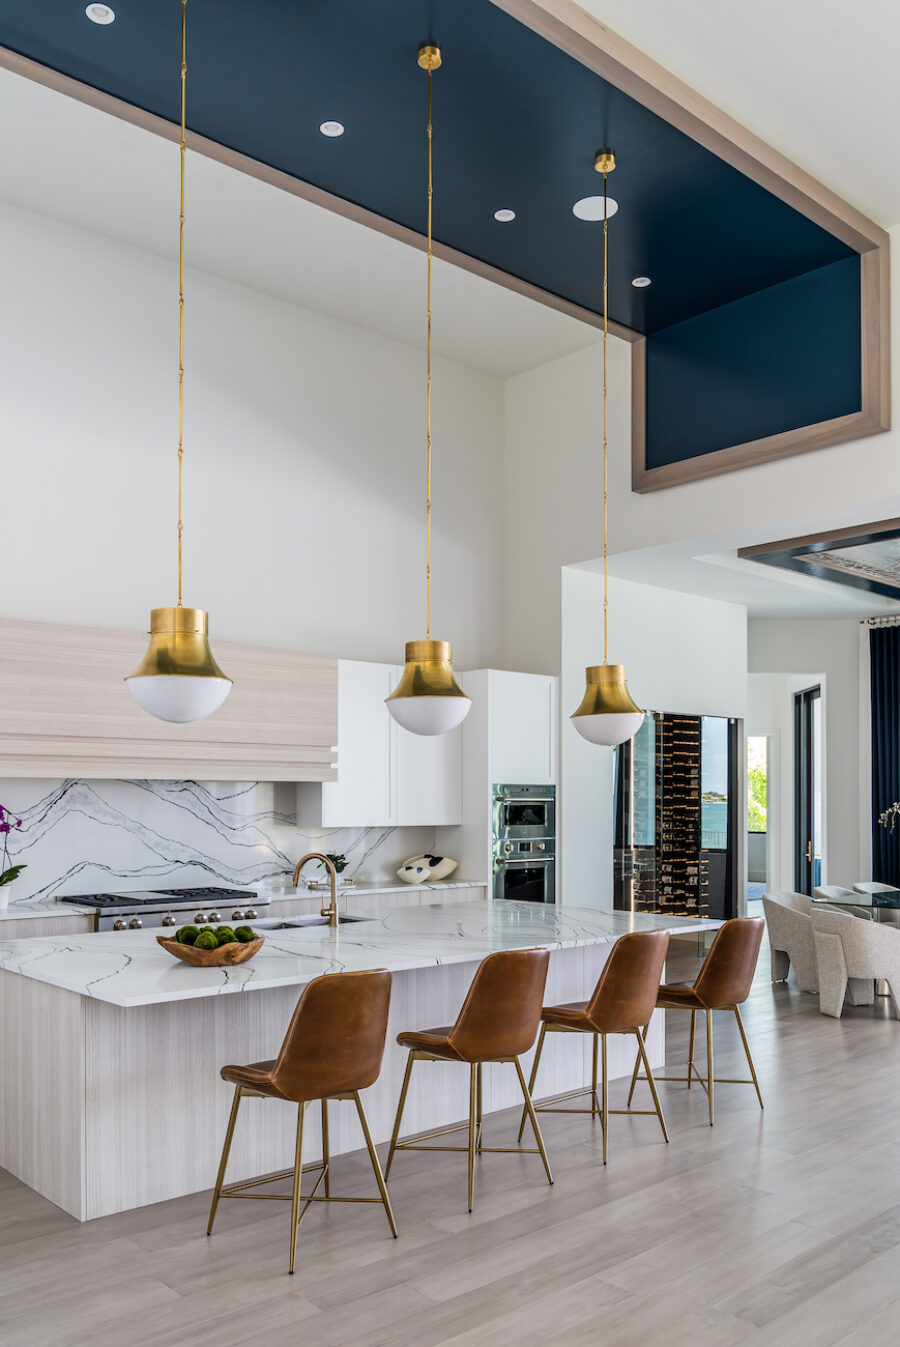 design-west-kitchen-interior-design-kitchen-island